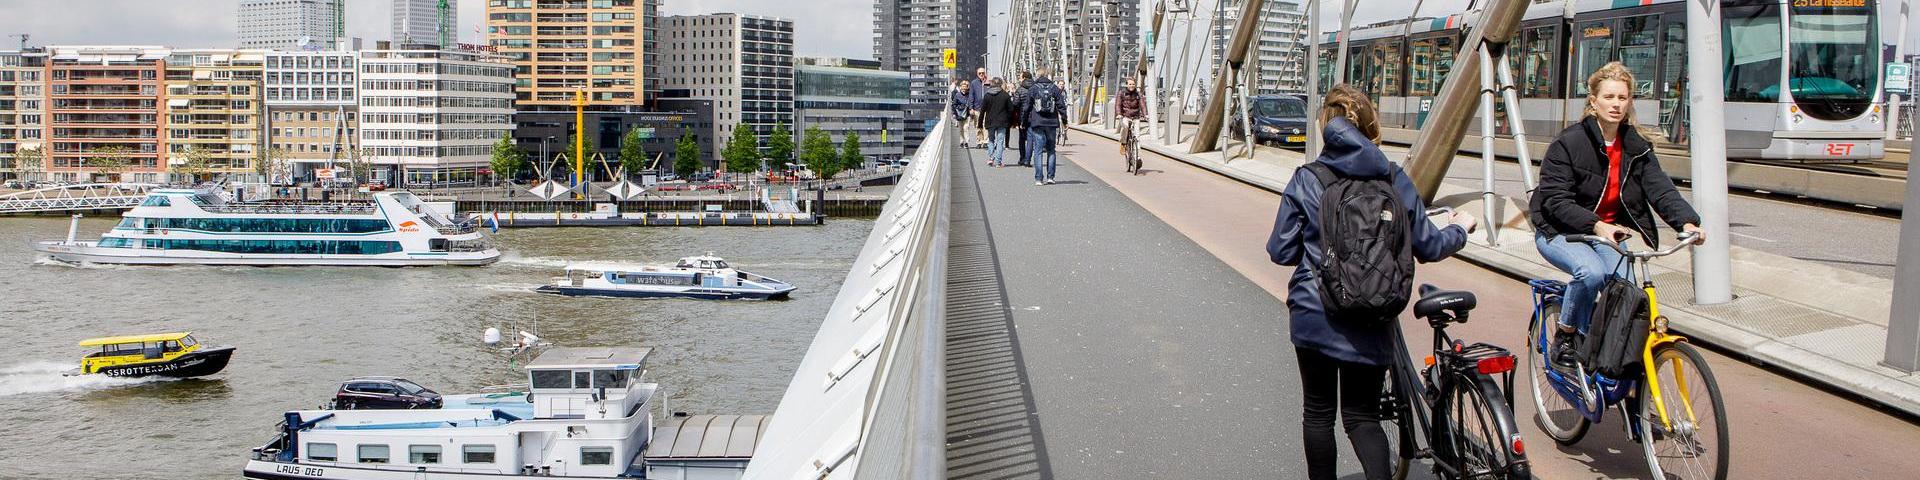 Voetgangers, fietsers en een tram op de Erasmusbrug. Onder de brug varen enkele schepen. Een mevrouw fietst op een OV-fiets.